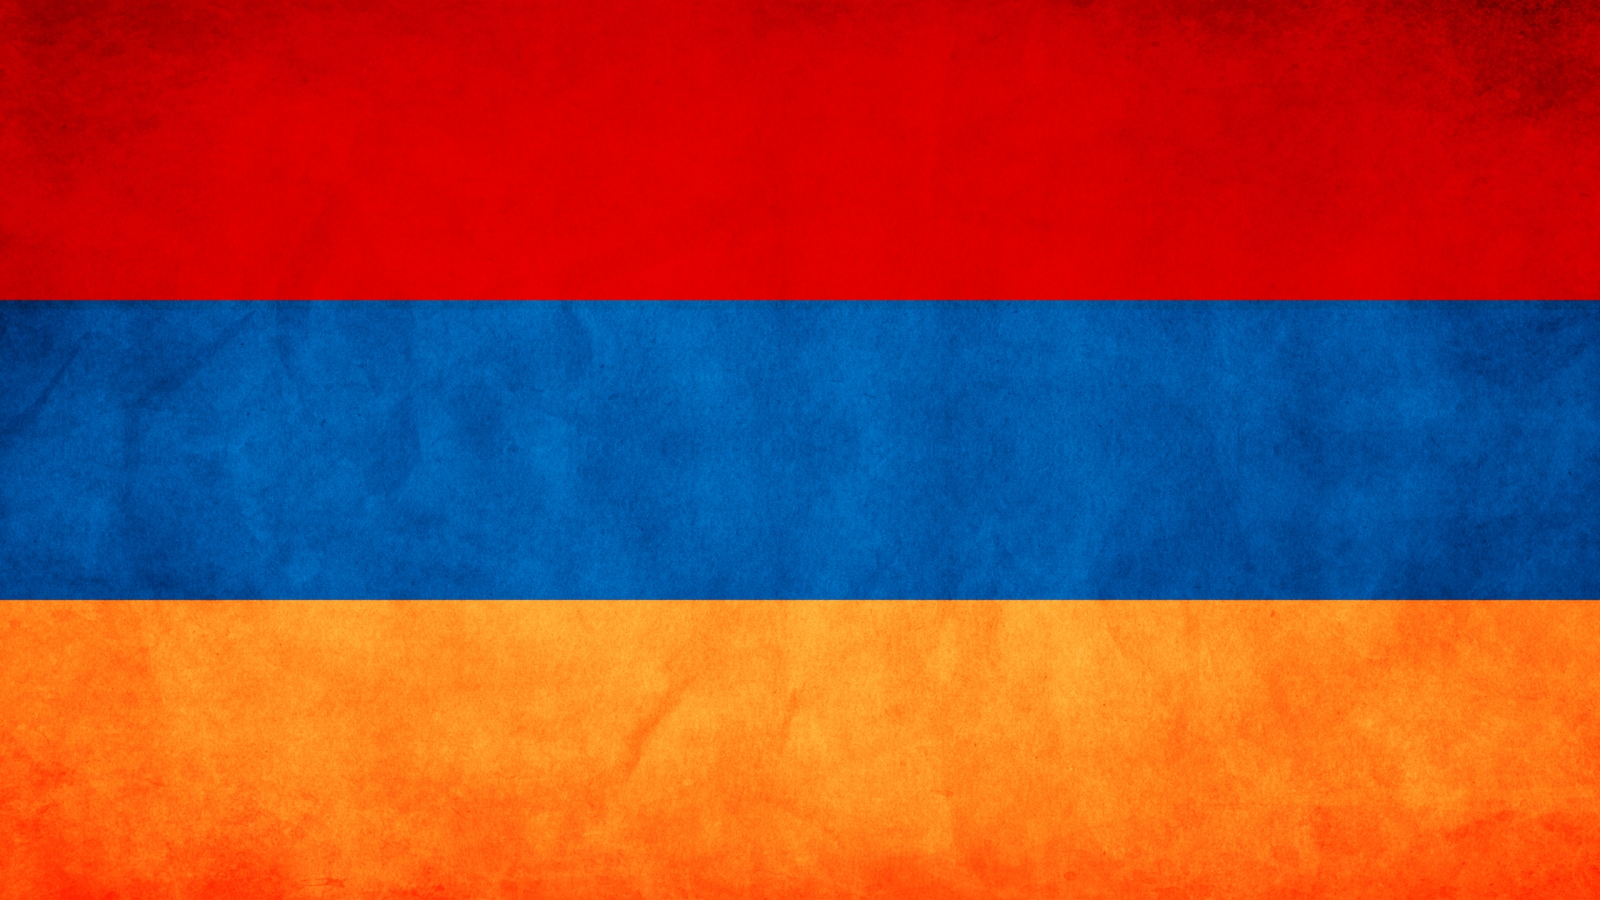 Armenia Flag for 1600 x 900 HDTV resolution